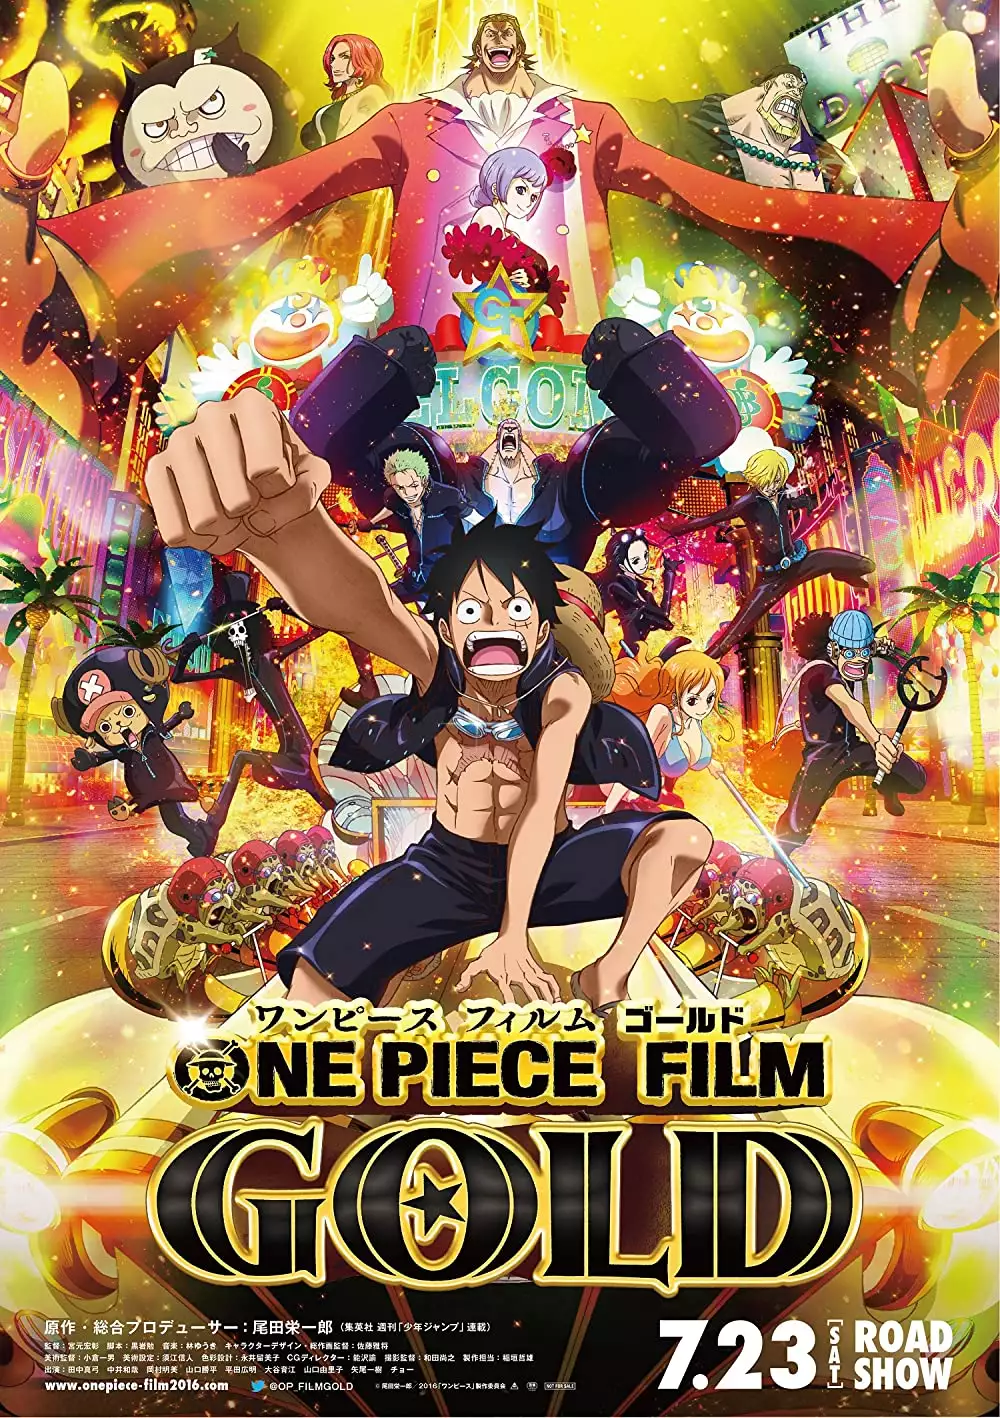 5+ Film Layar Lebar One Piece Rating Tertinggi di IMDb, Intip Daftarnya! -  Film Unik